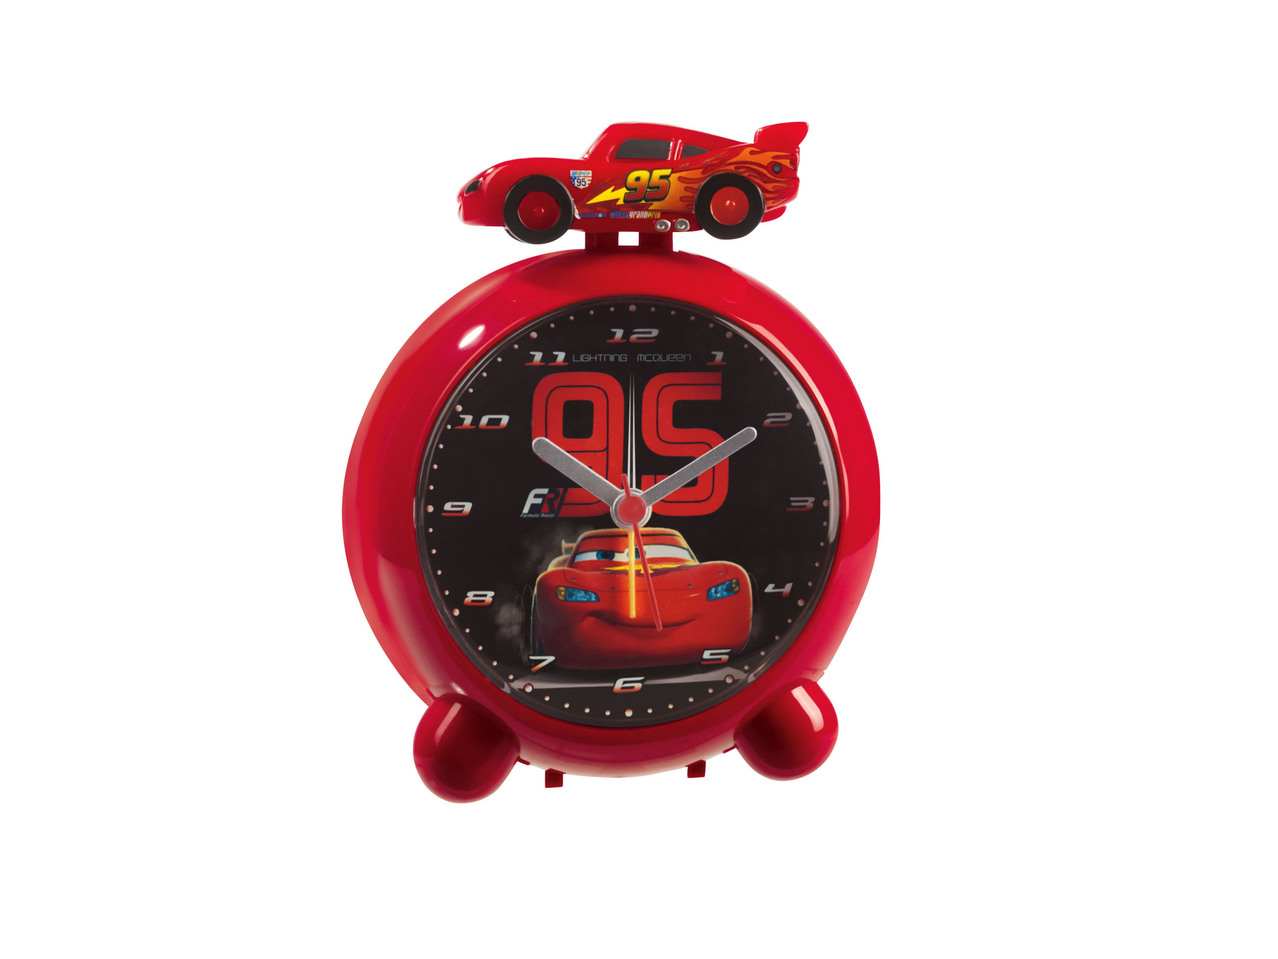 Kids' Alarm Clock "Cars, Star Wars, Frozen, Minions"